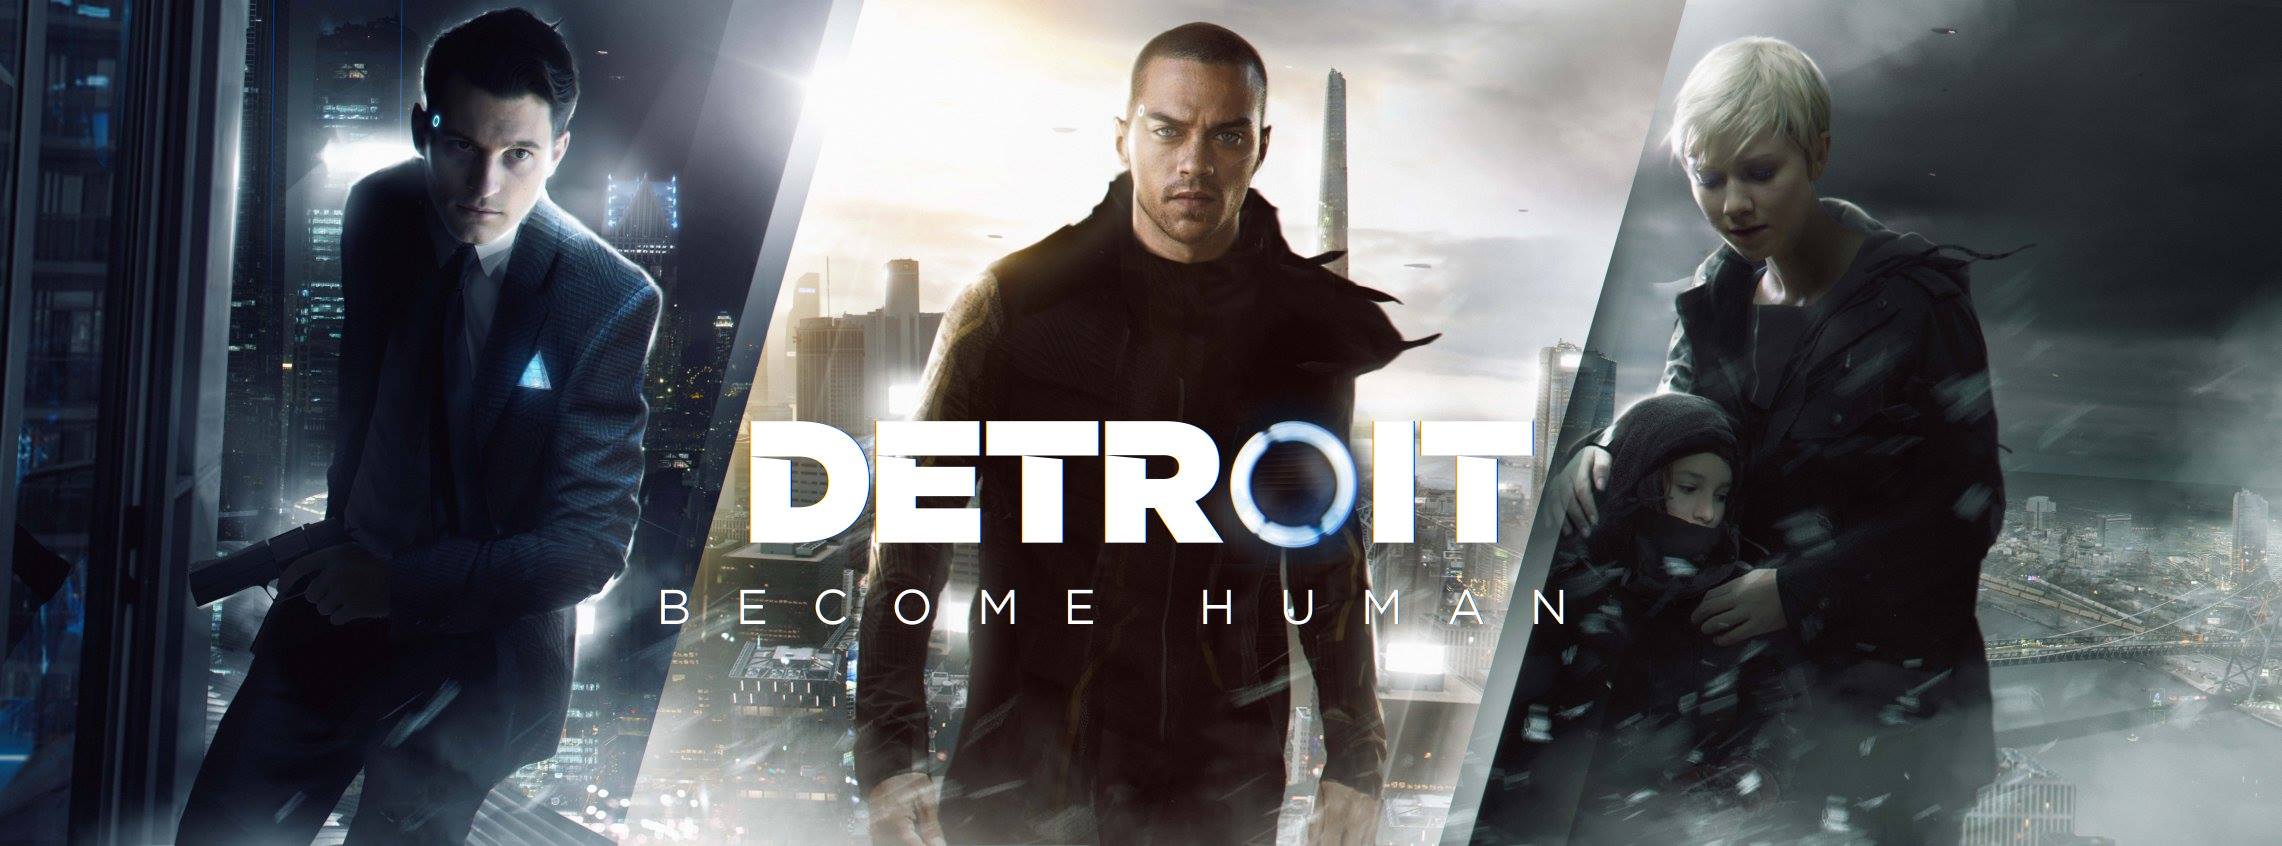 Detroit: Become Human est désormais disponible sur PC via l’Epic Games Store